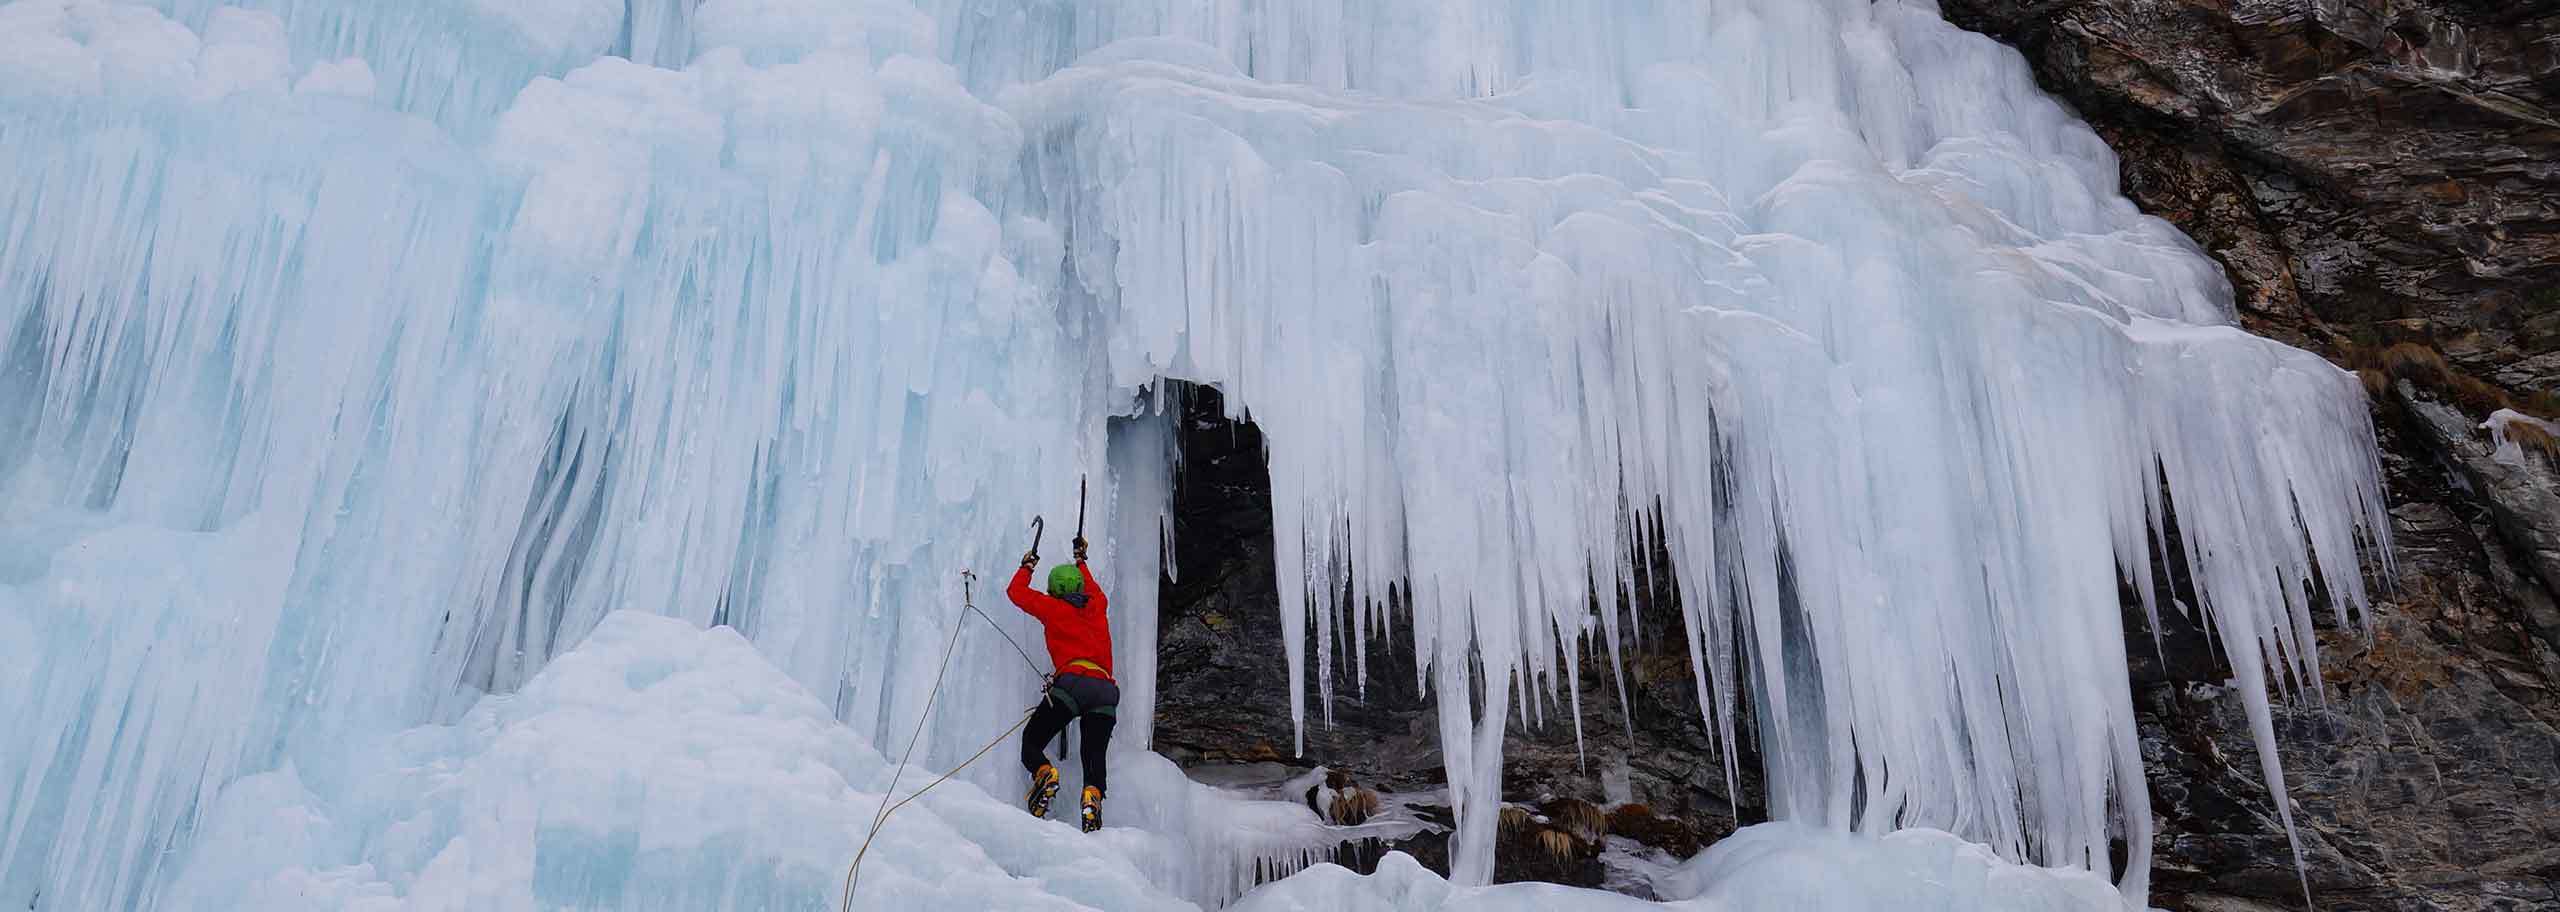 Ice Climbing in Falcade, Waterfall Ice Climbing Adventure